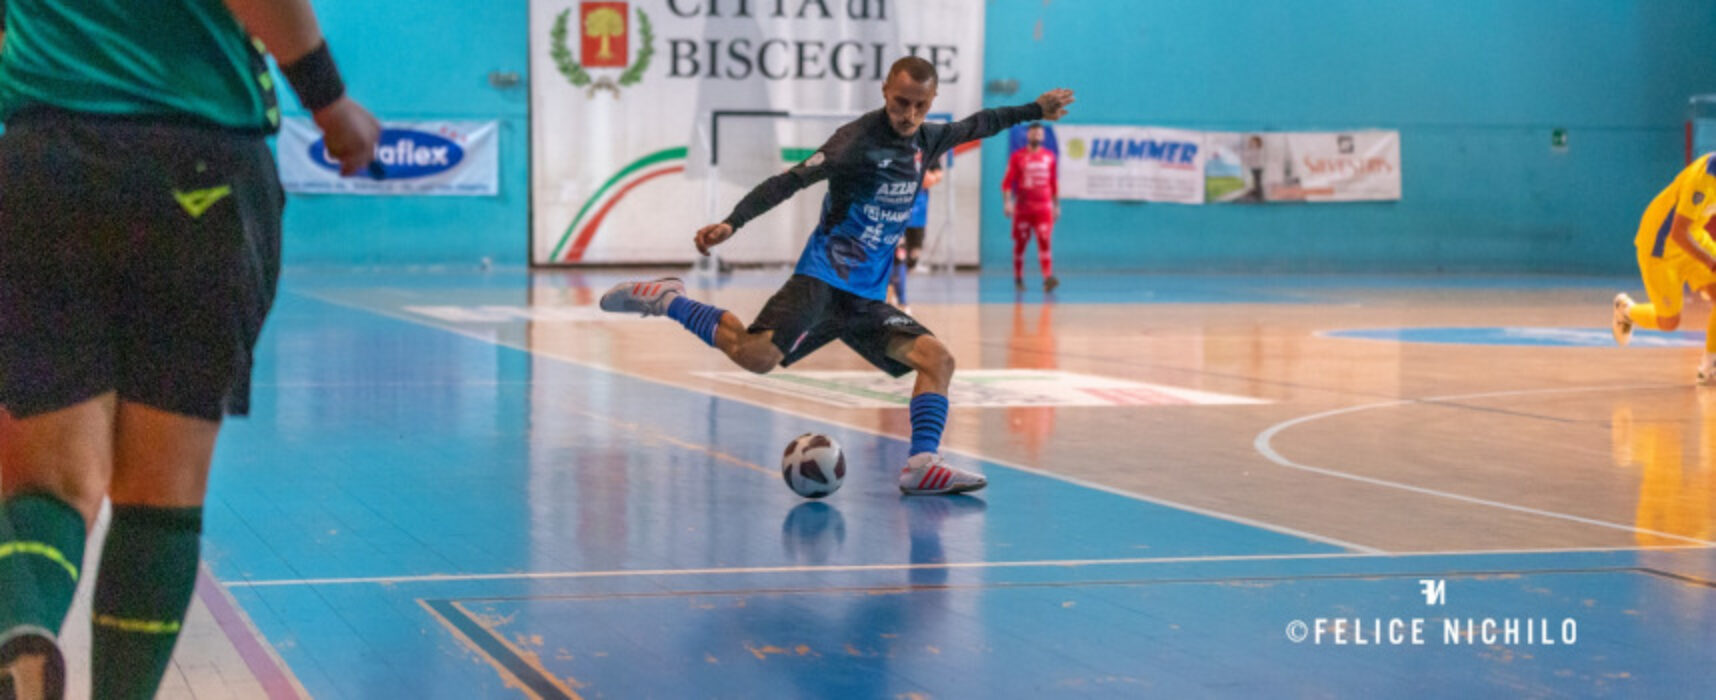 Futsal: Diaz vince in rimonta, pari Cinco, Nettuno ko / RISULTATI E CLASSIFICA